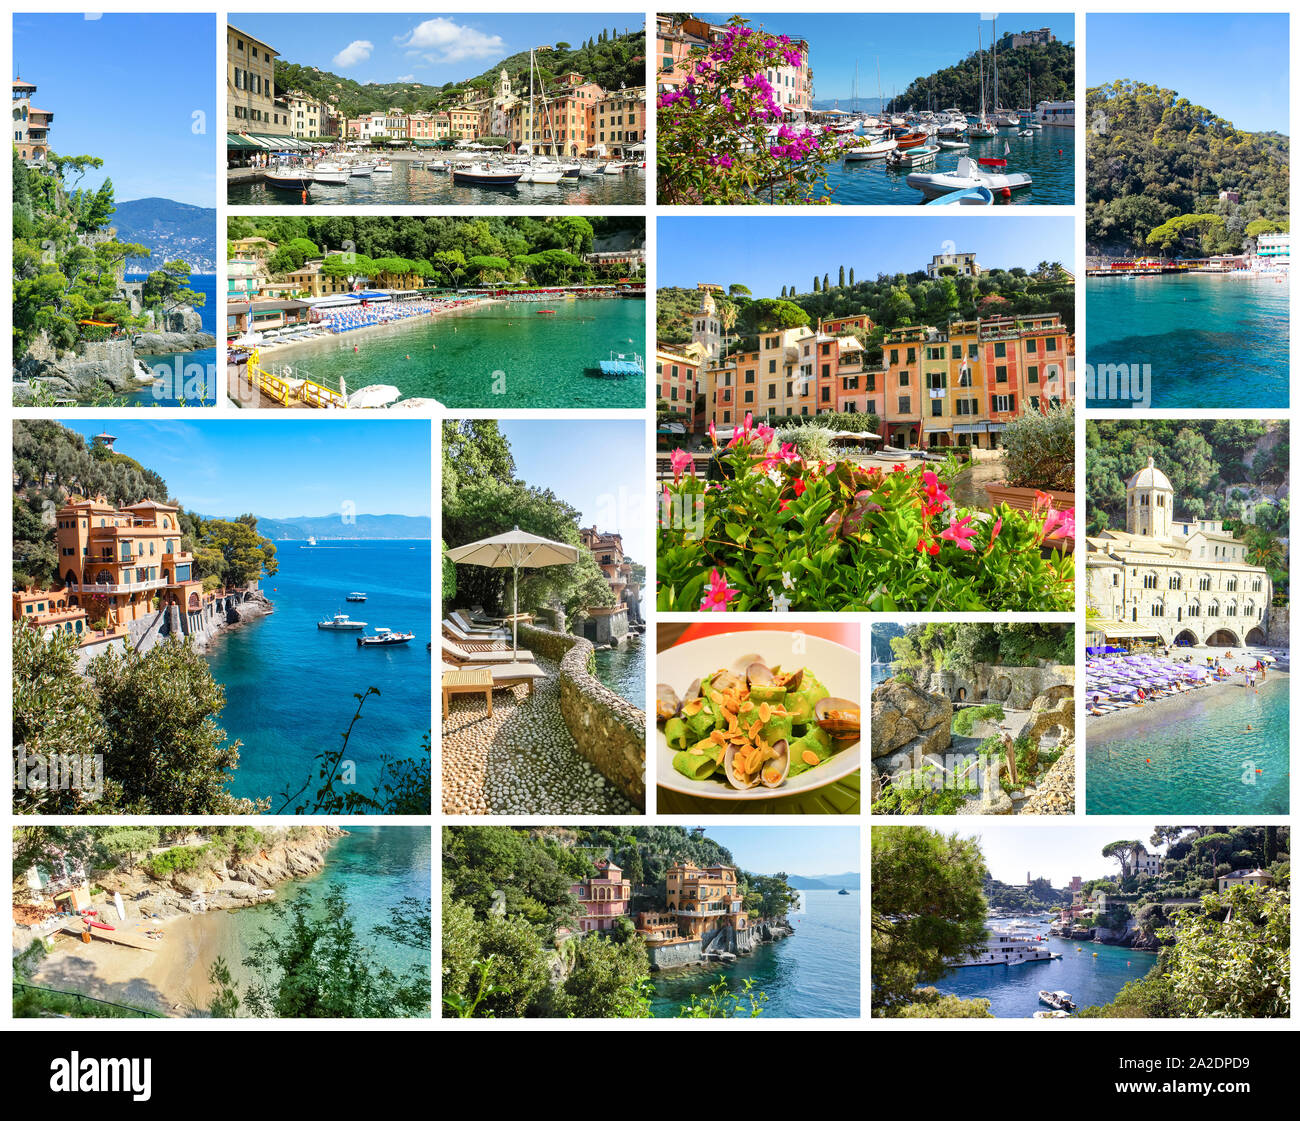 Magnifique baie aux maisons colorées à Portofino, ligurie, italie Banque D'Images